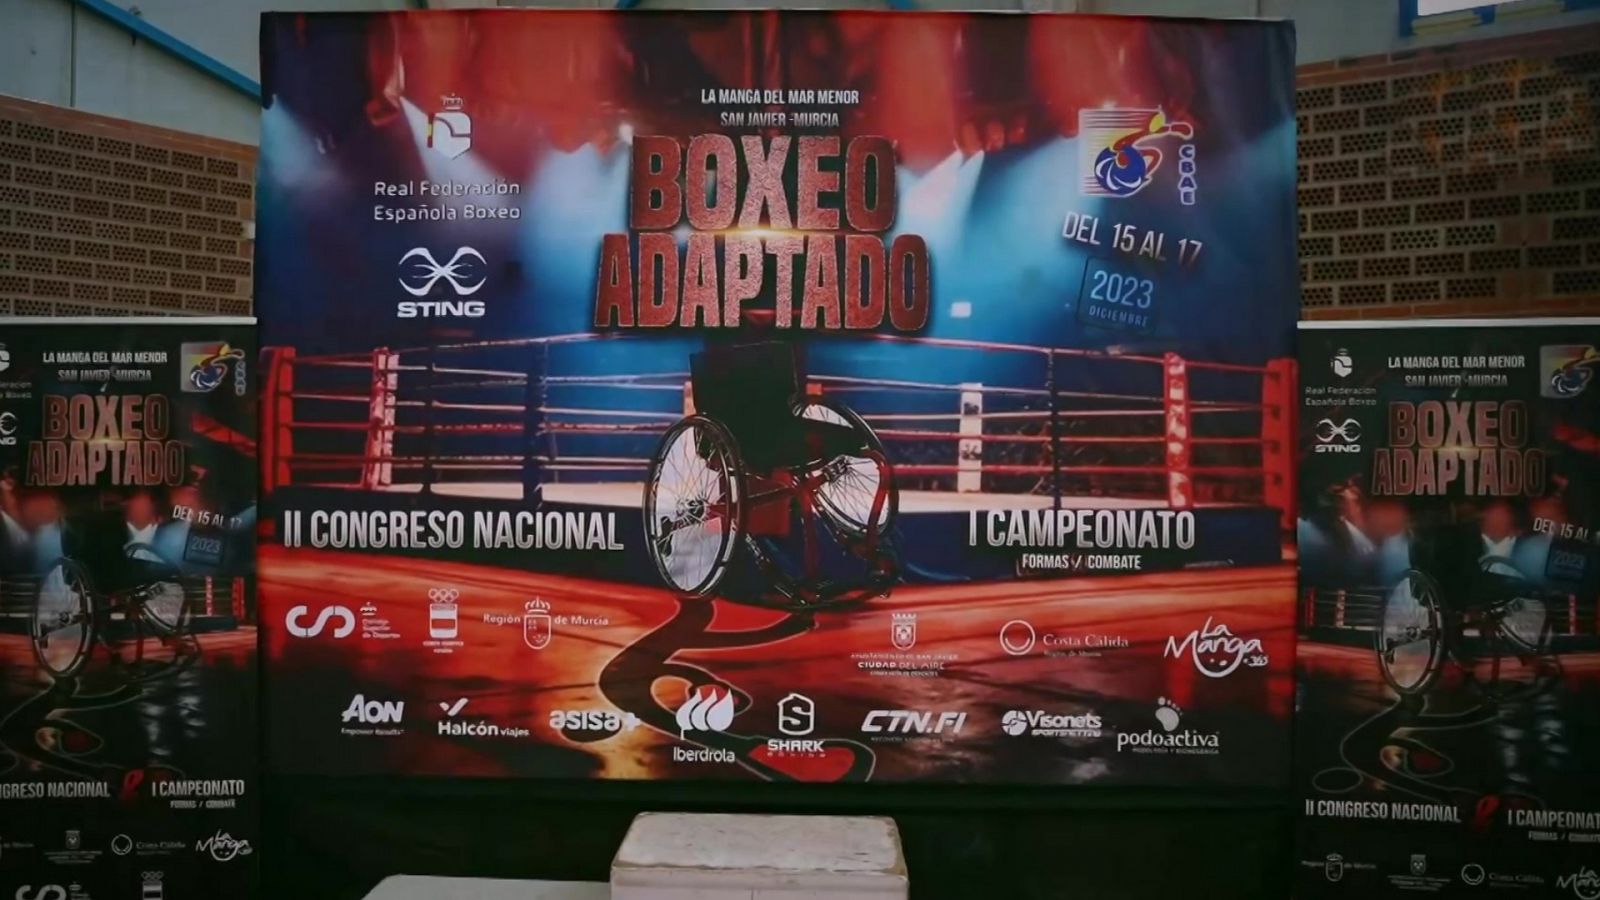 Boxeo adaptado - Primer Campeonato de Boxeo Adaptado